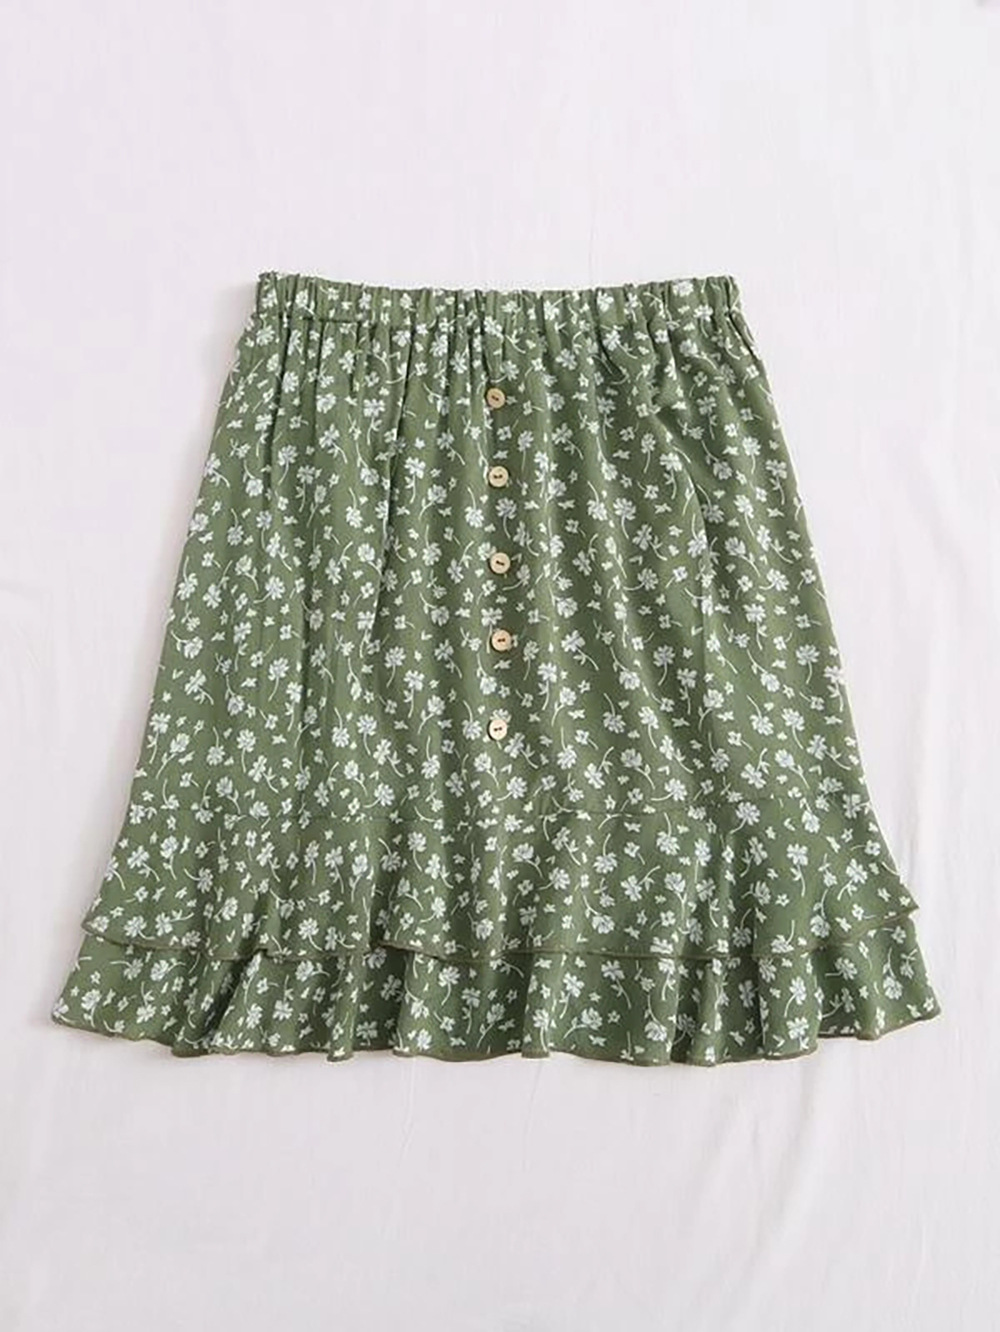 summer new women s floral short skirt small daisy wood ear print wrinkle skirt  NSDF1540